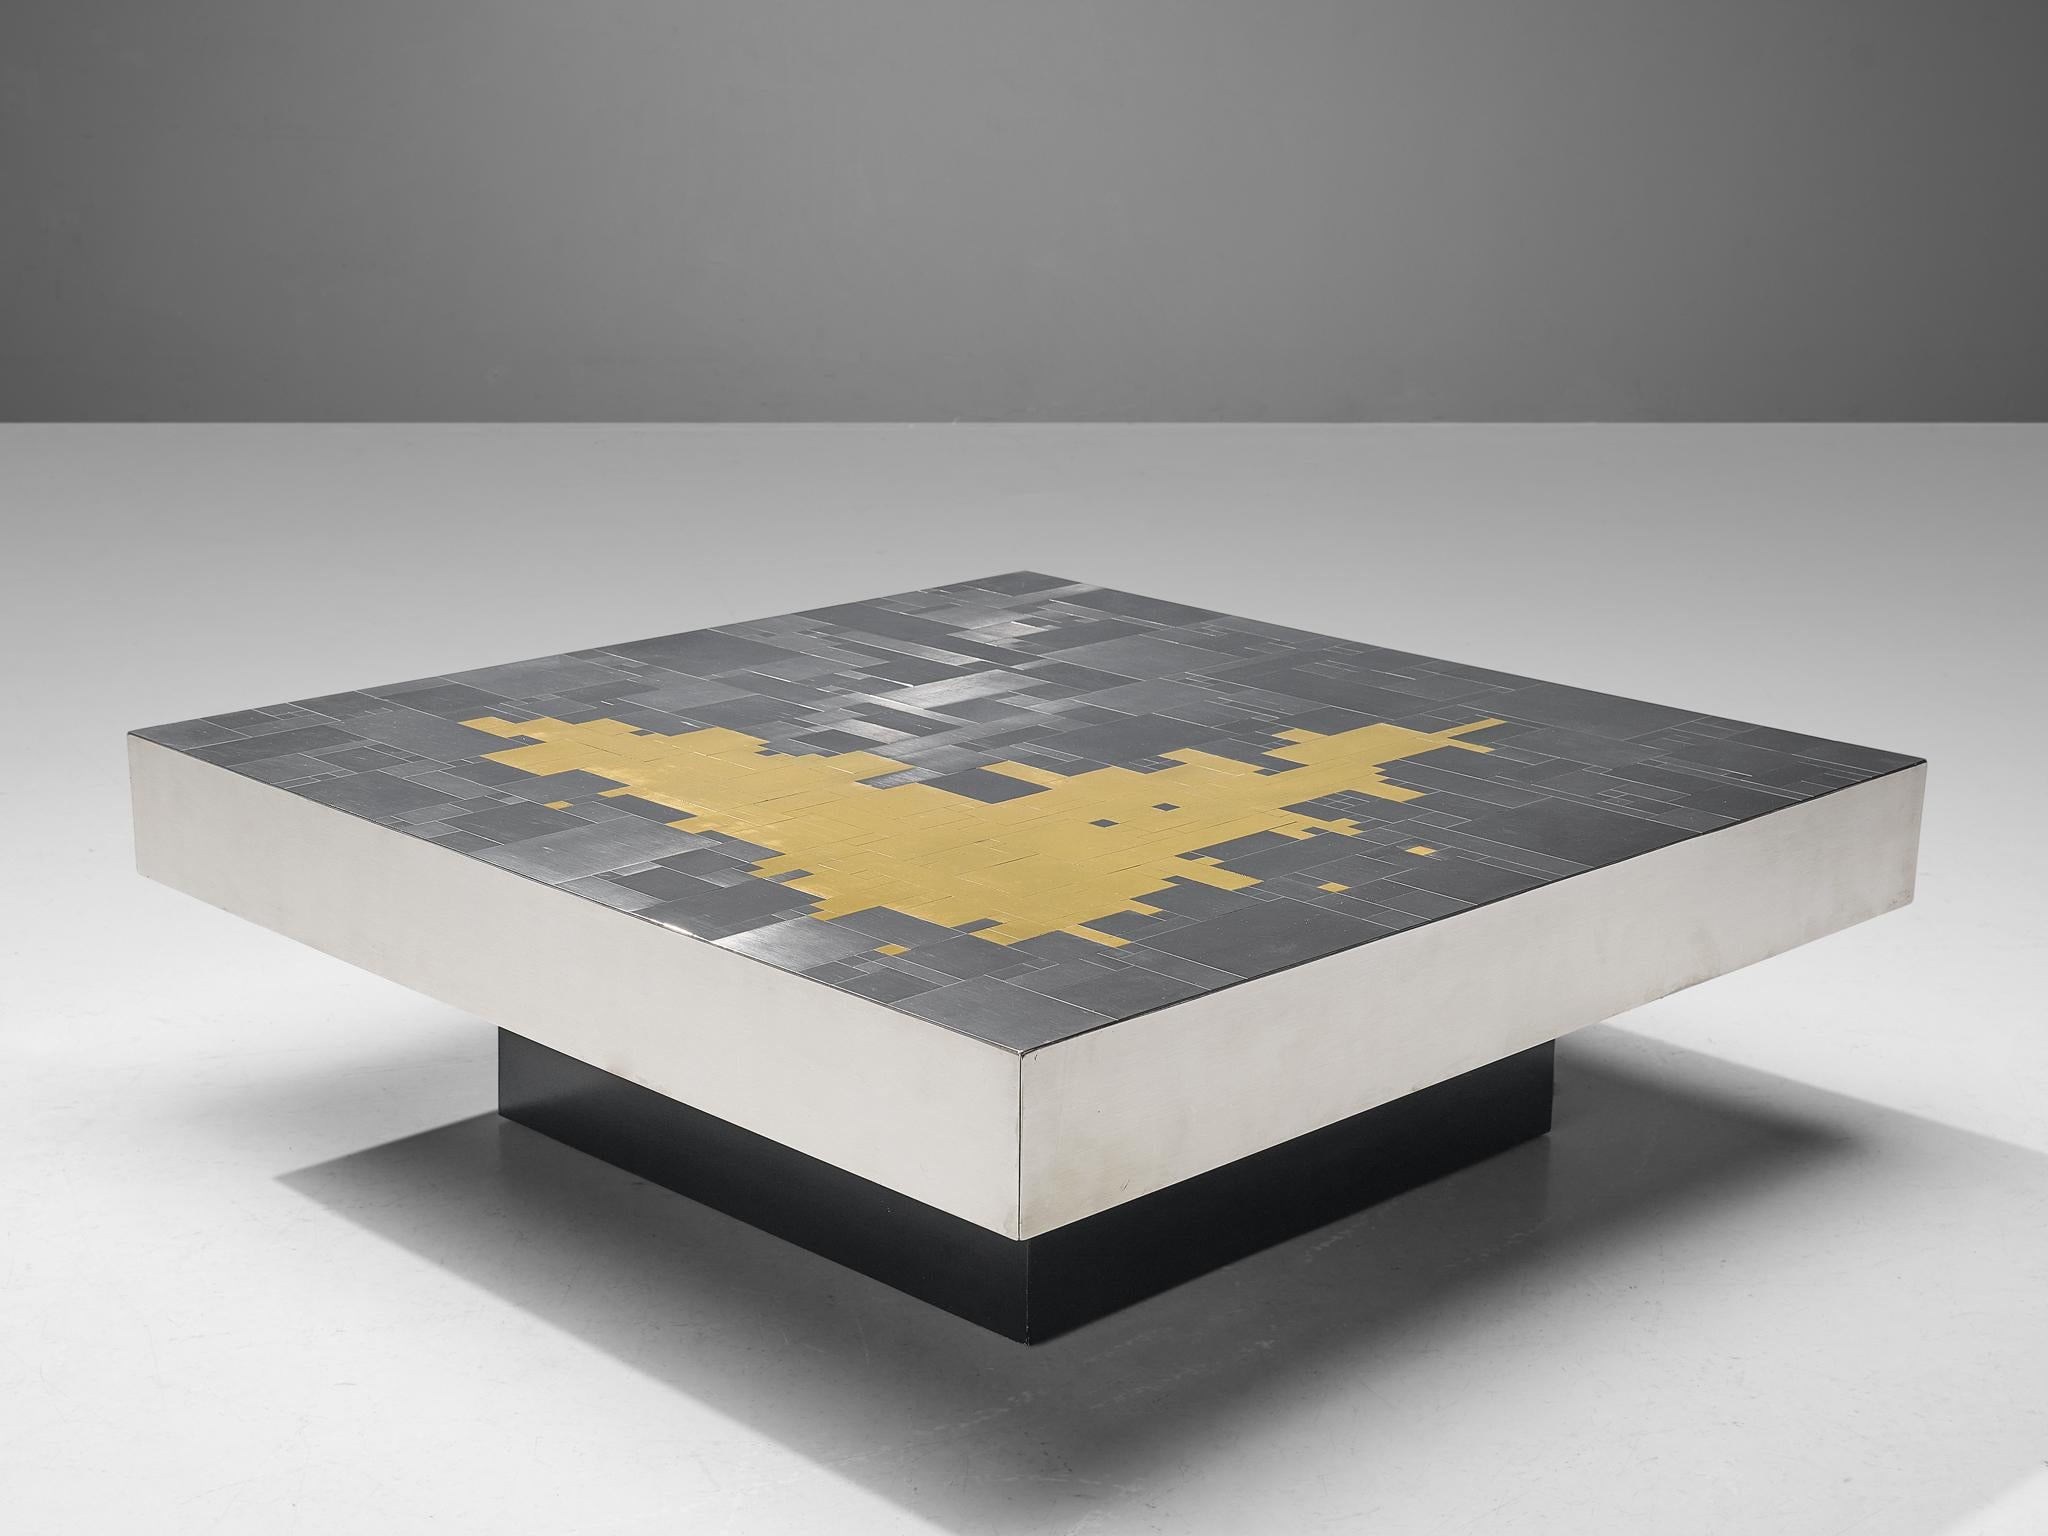 Jean Claude Dresse, Couchtisch, Messing, Stahl, Metall, Holz, Belgien, 1970er Jahre

Quadratischer Couchtisch mit markanter Tischplatte, entworfen von Jean Clause Dresse in den 1970er Jahren. Dresse ist für seine kühnen Entwürfe bekannt, und dieser